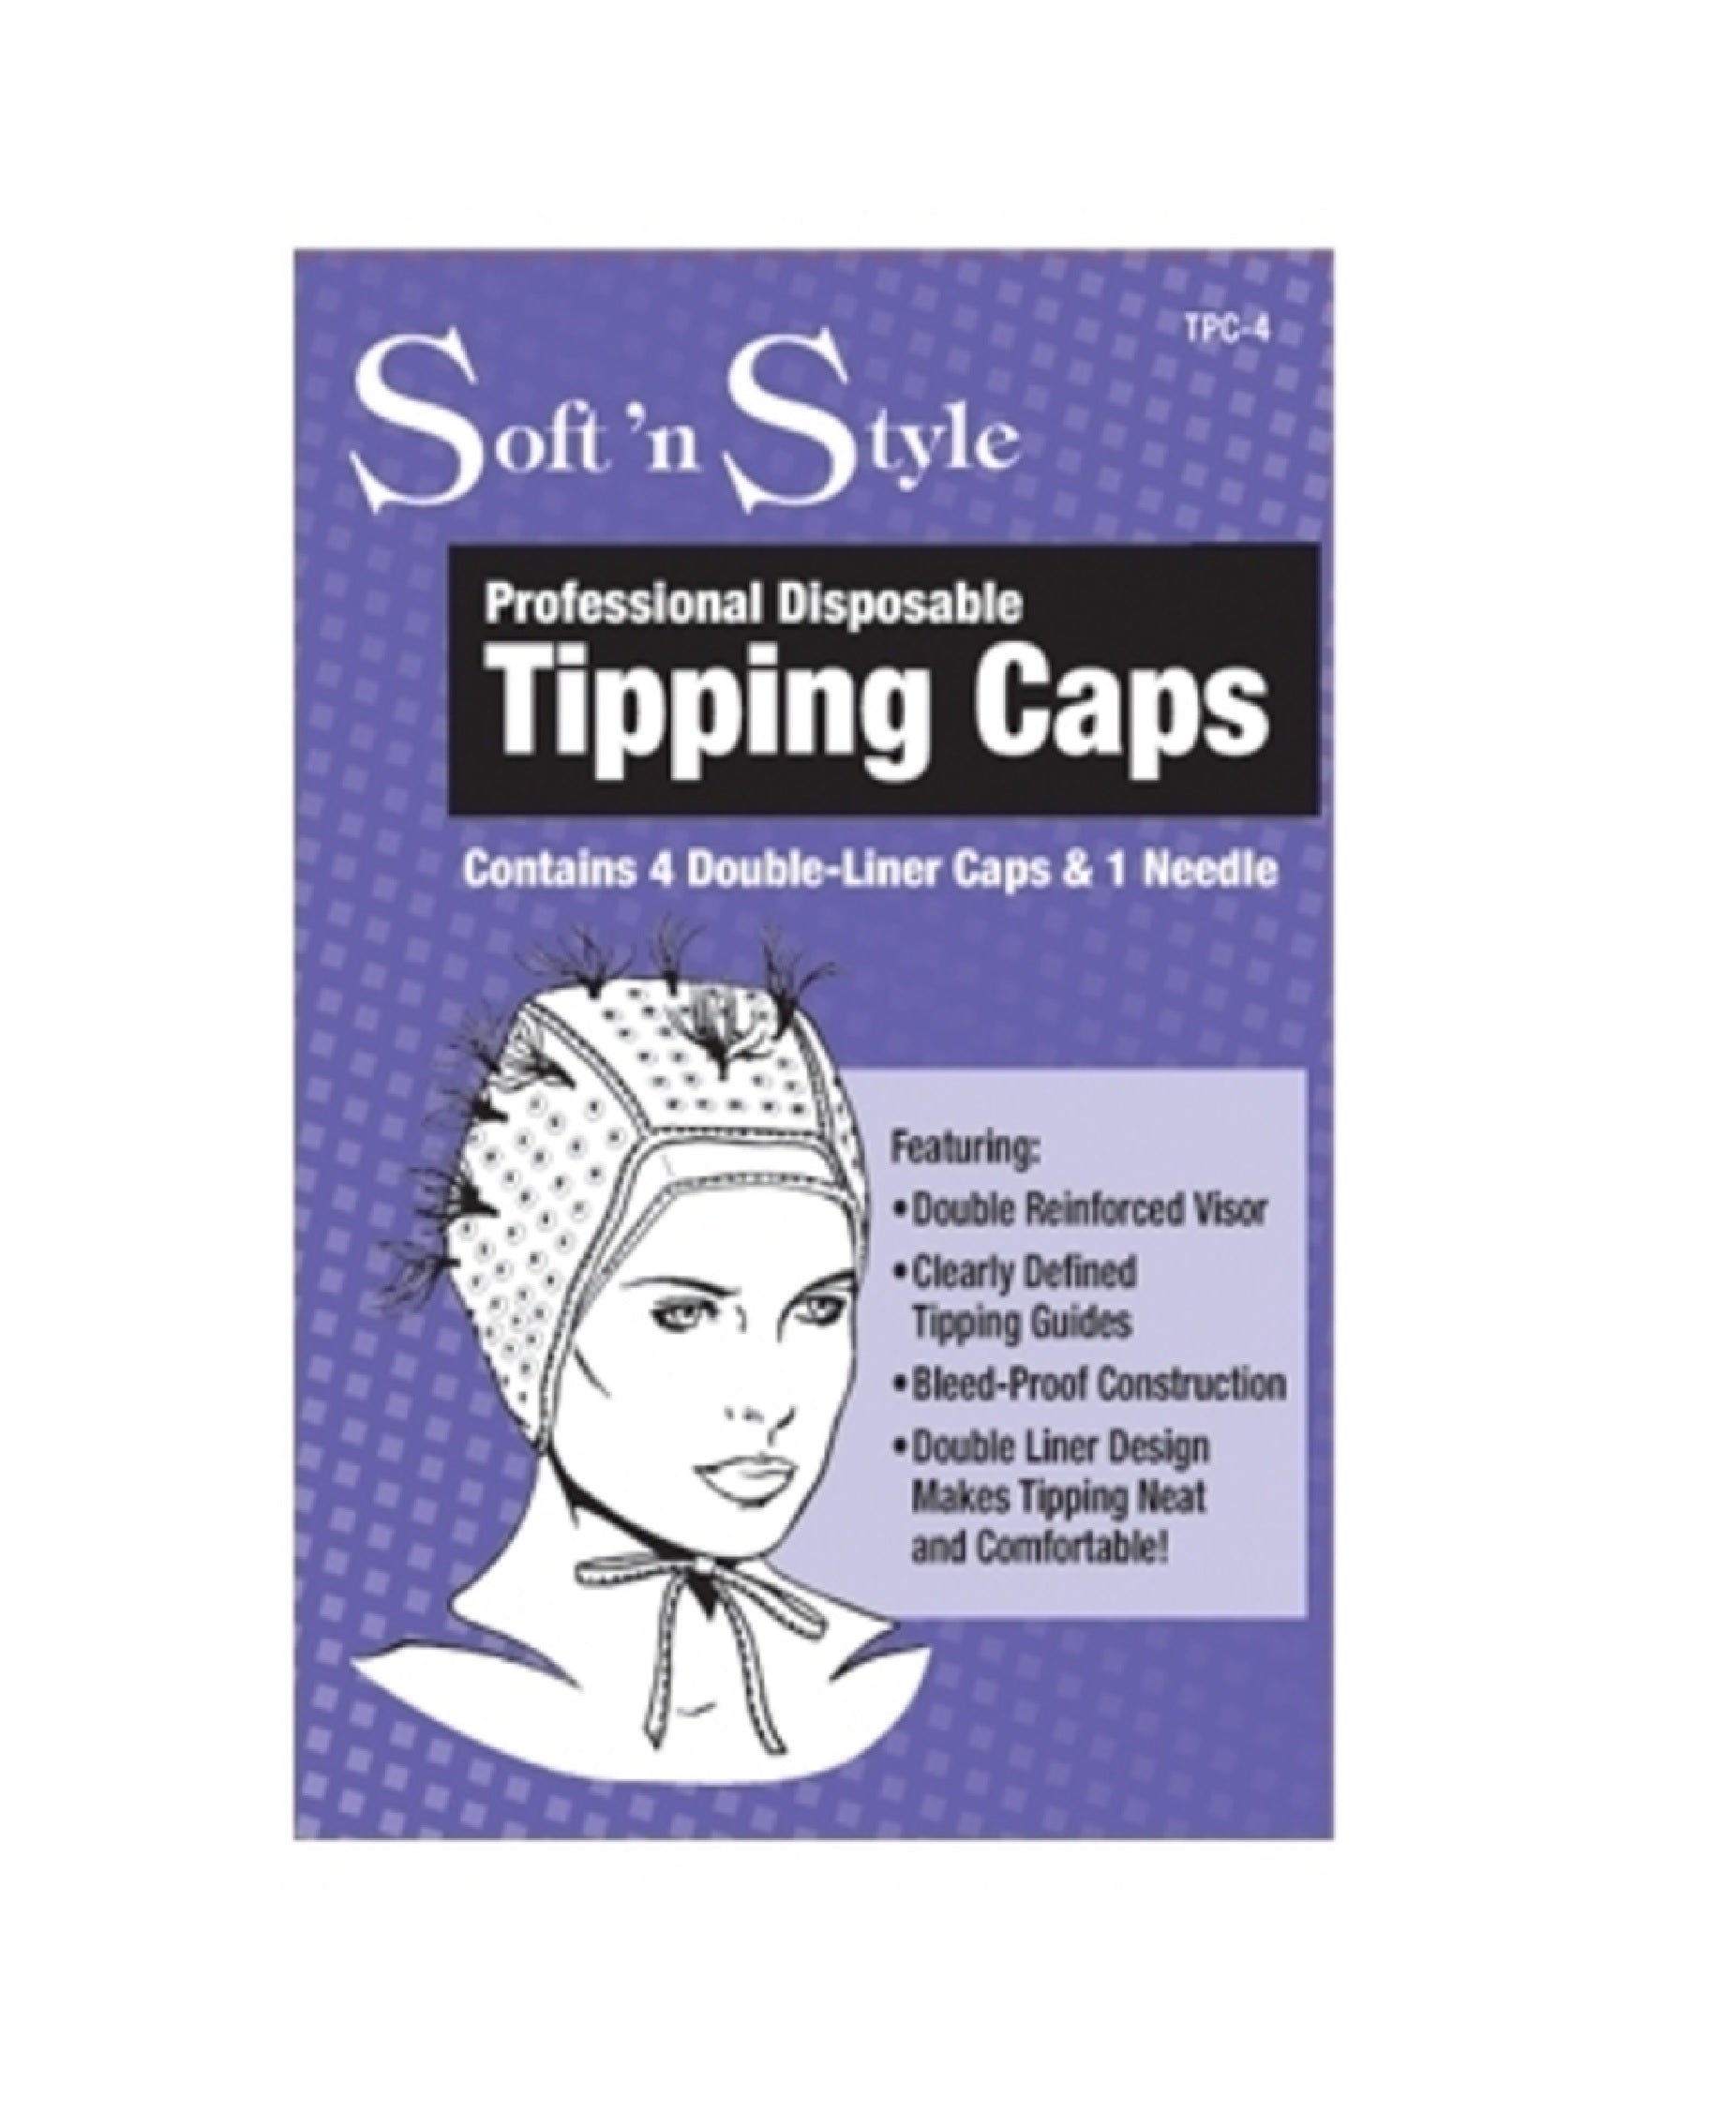 SNS Tipping Caps (4caps+1Metal) TPC-4